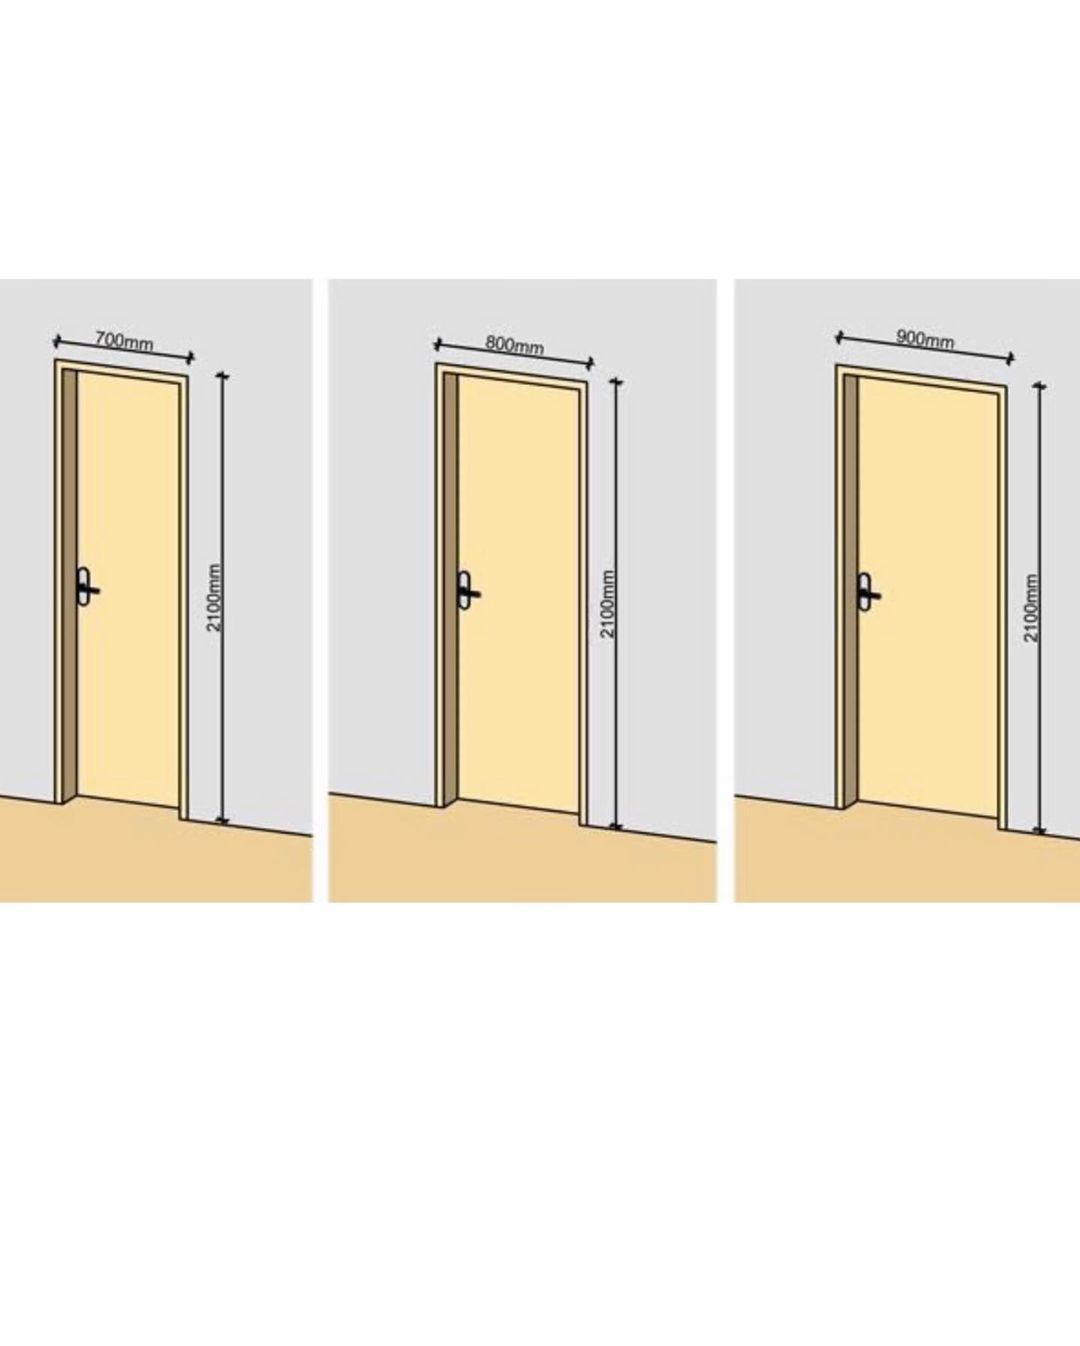 Максимальные размеры дверей. Высота проема межкомнатной двери стандарт. Стандартный размер полотна межкомнатной двери. Ширина дверного проема межкомнатной двери стандарт. Высота дверного проема межкомнатной двери стандарт.